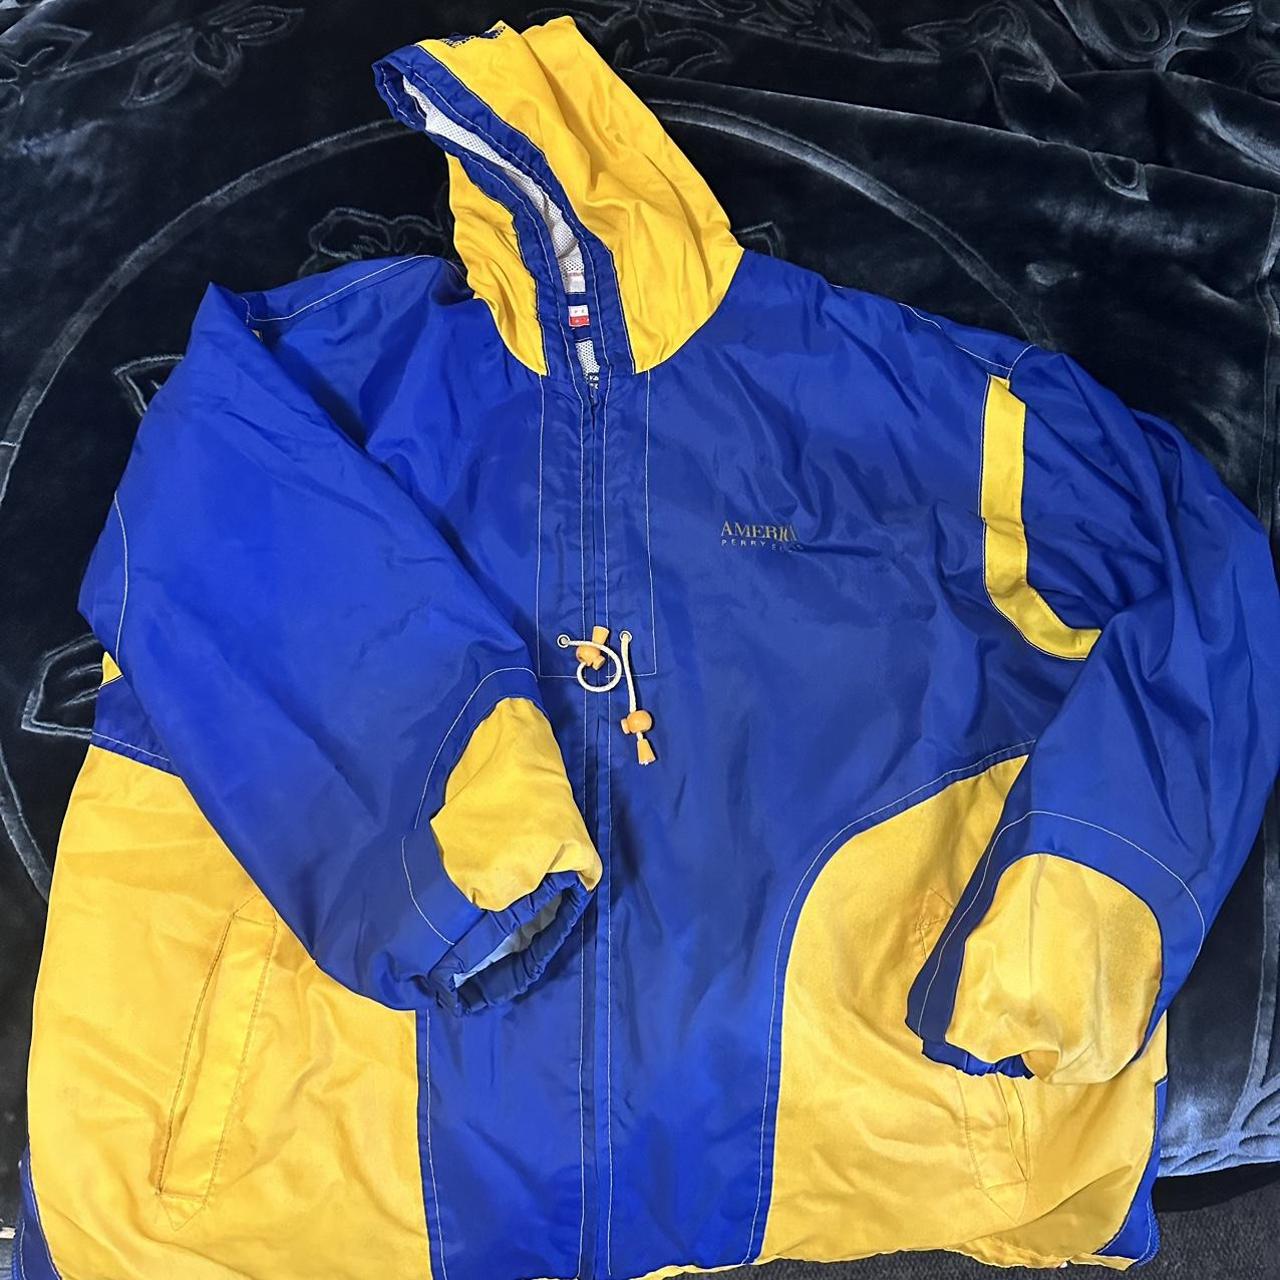 Vintage 90’s Perry Ellis America jacket 2XL... - Depop